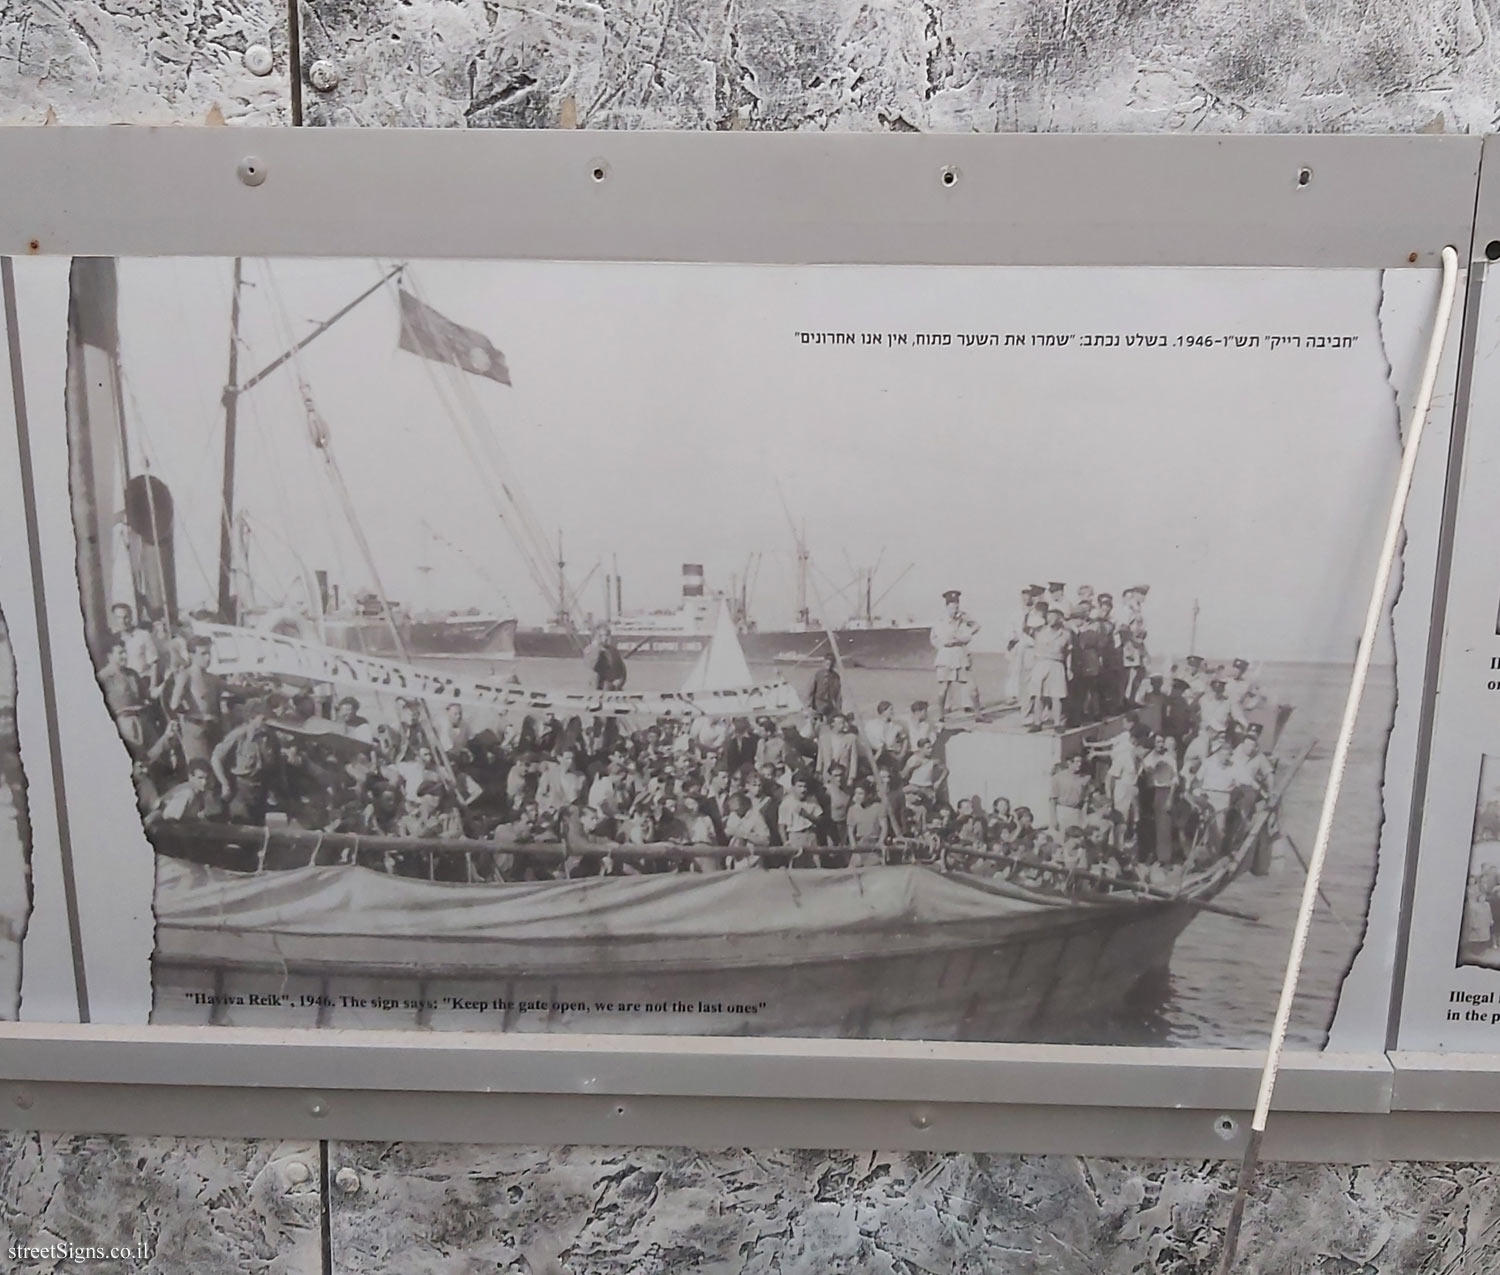 Tel Aviv - London Garden - The story of the illegal immigration - The ship "Haviva Reik"